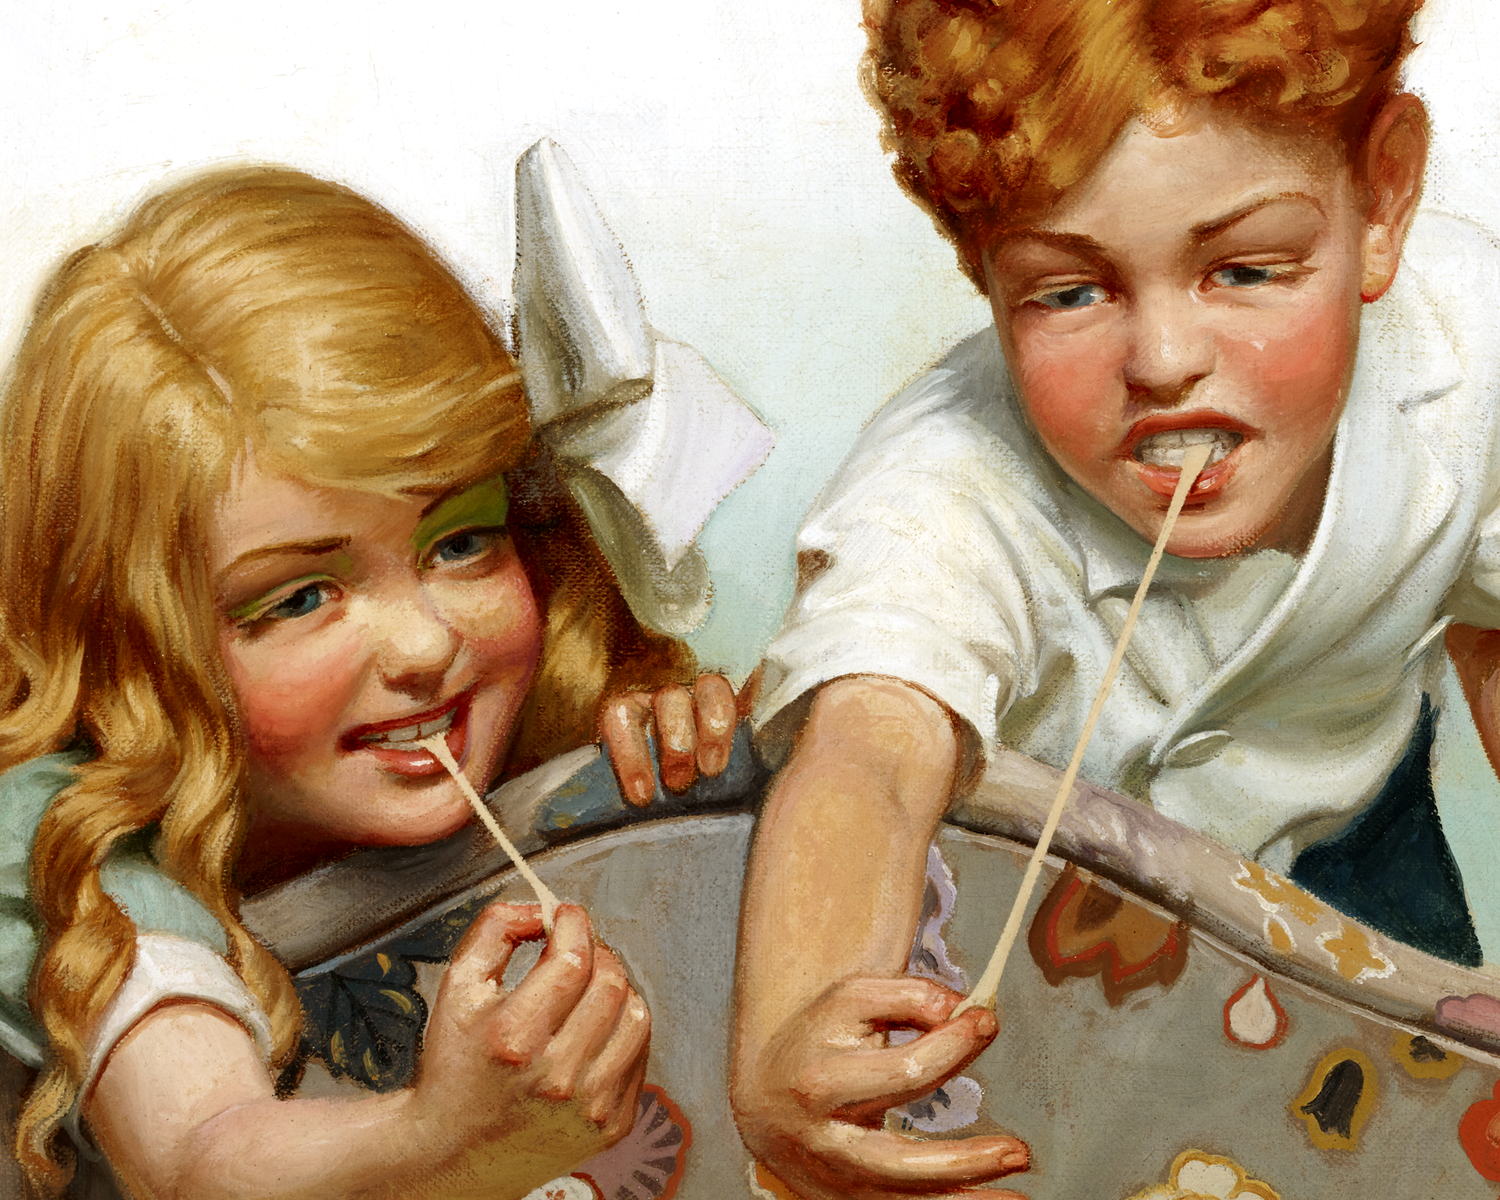 Gum Kids by Leslie Thrasher